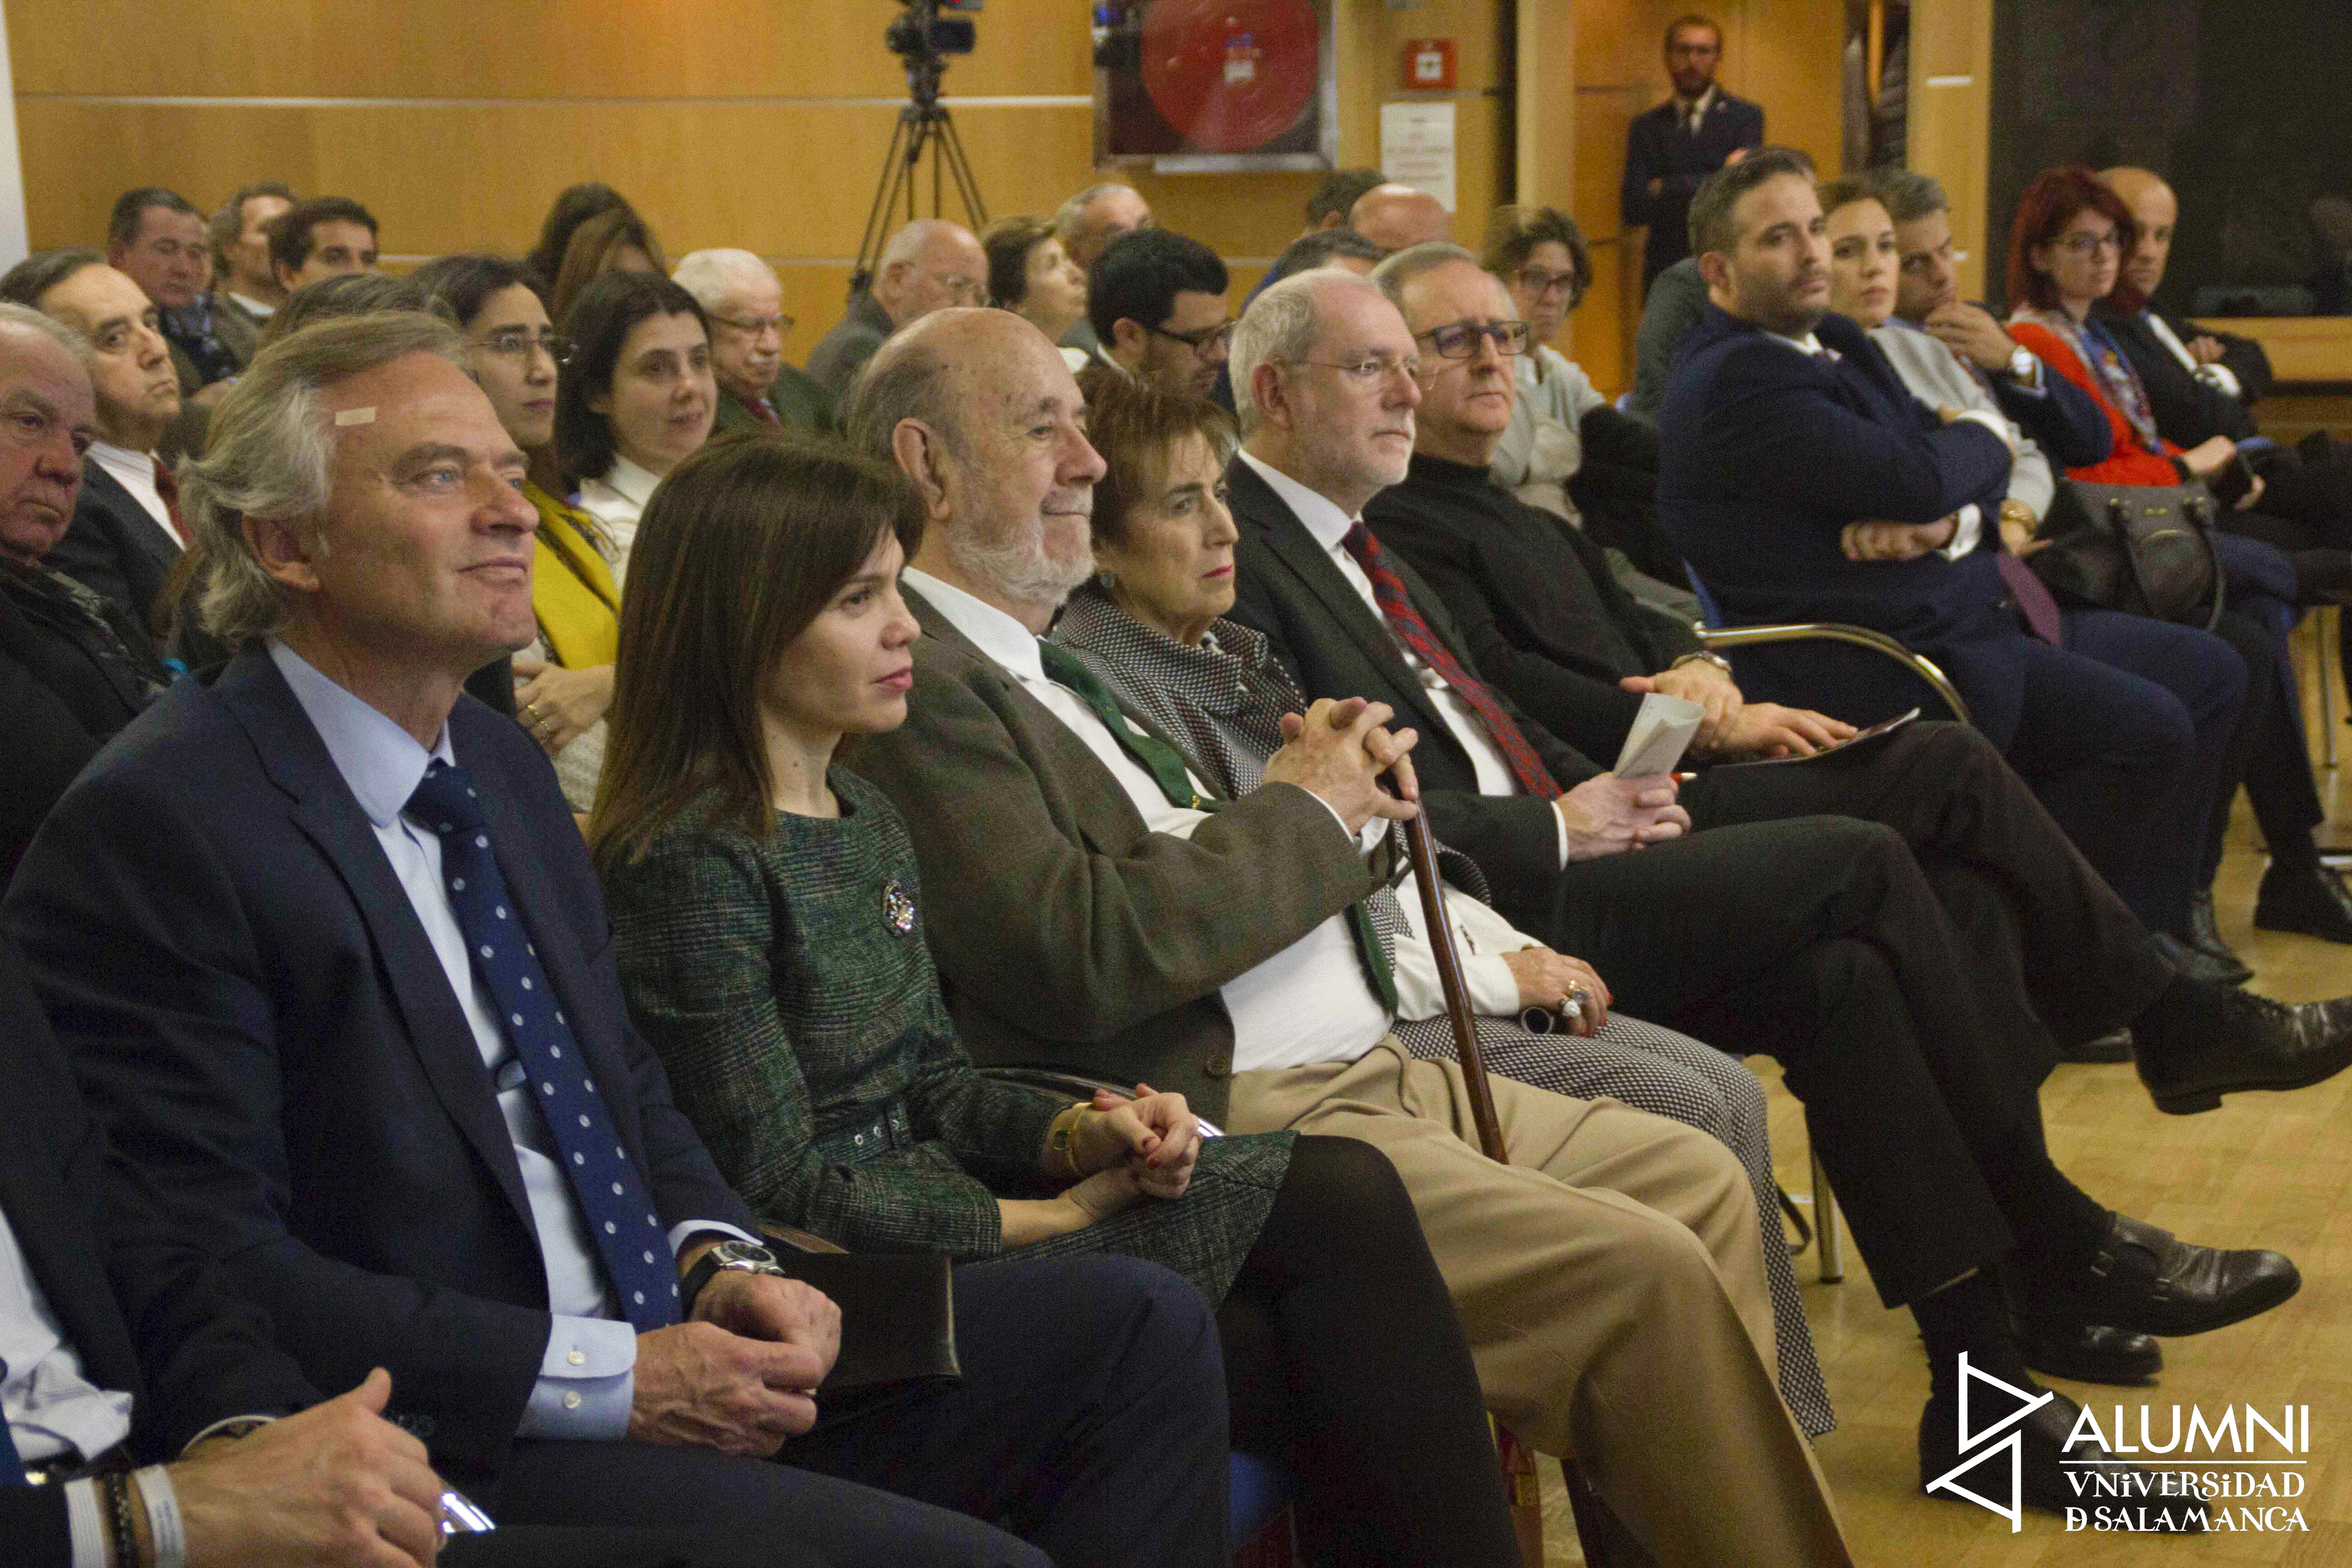 ALUMNI Universidad de Salamanca celebra el III Encuentro anual ALUMNI-USAL en Madrid con motivo del VIII Centenario